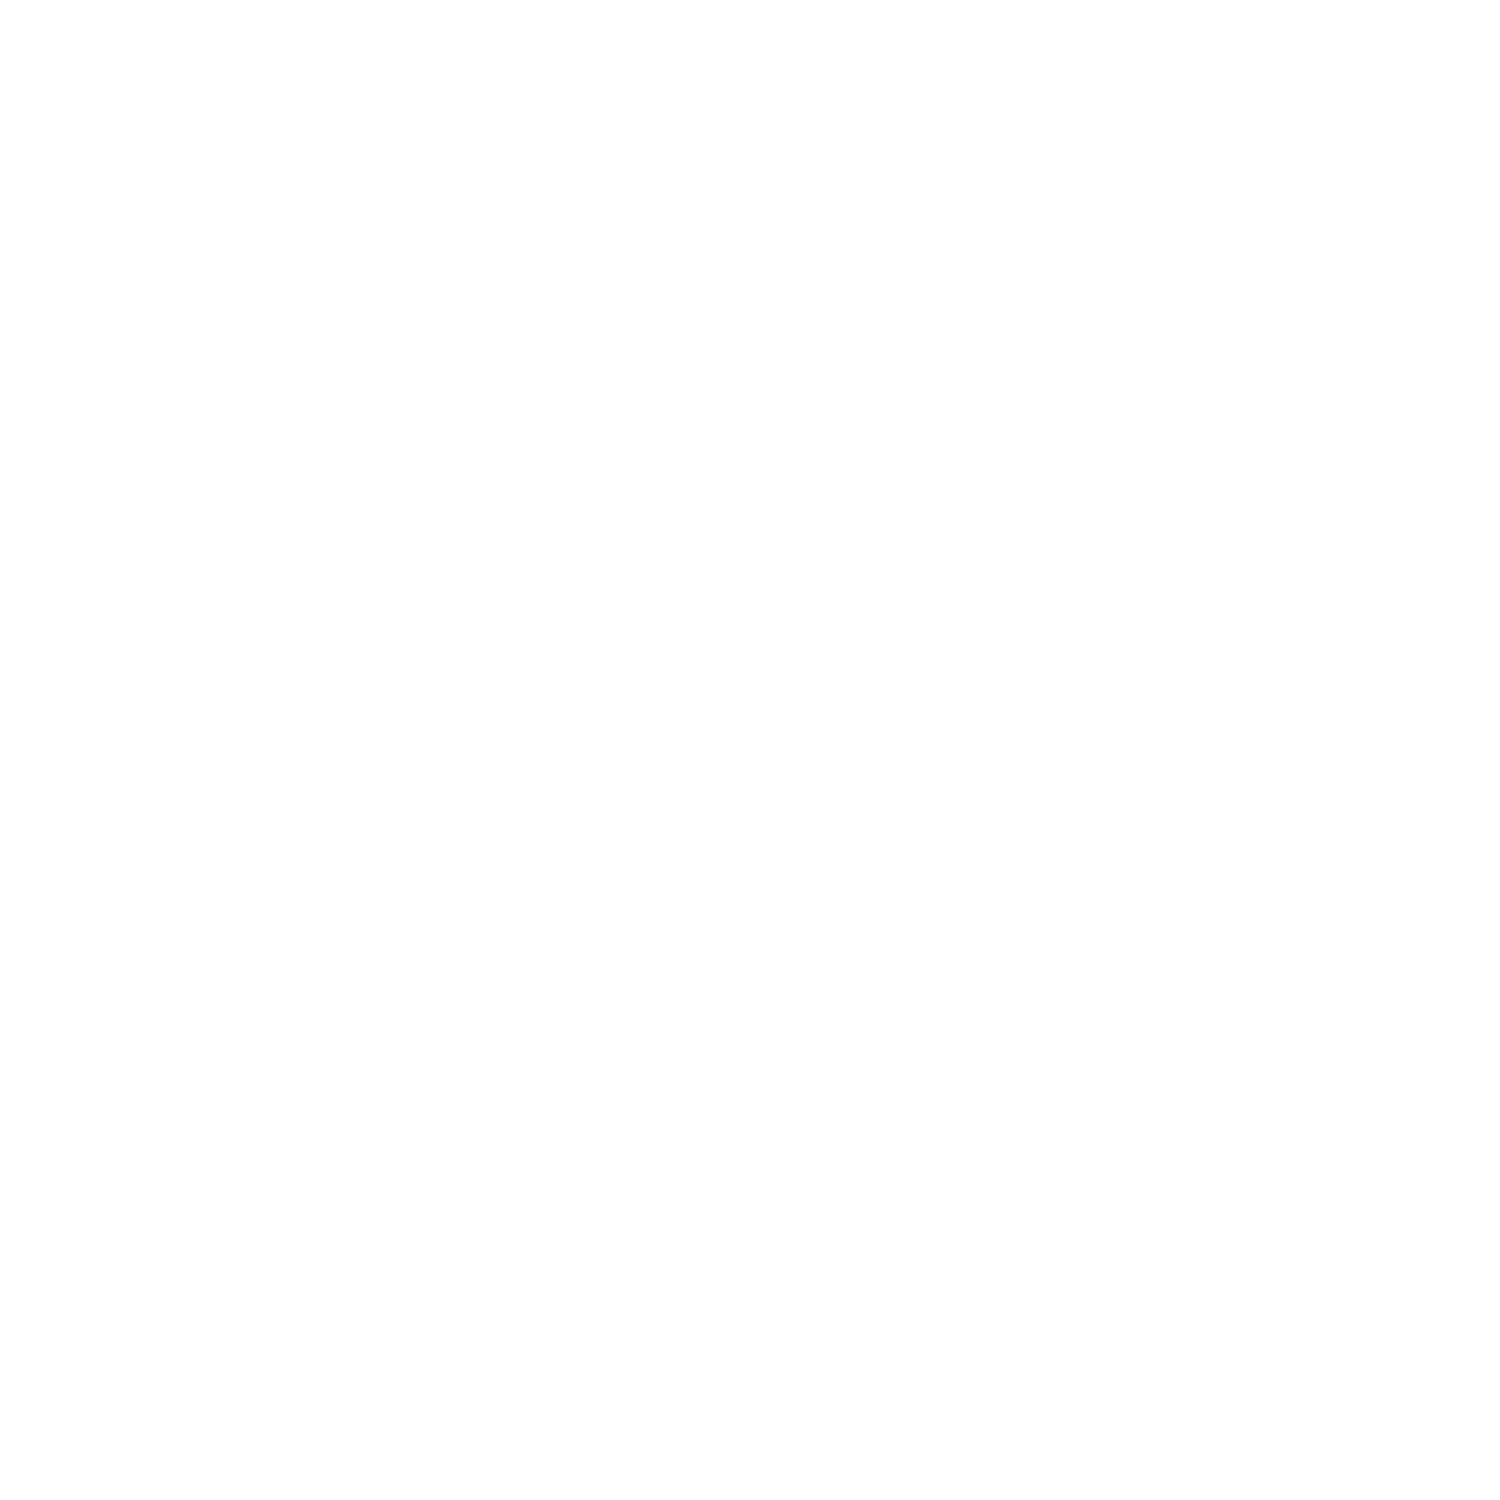 Wingham Music Festival